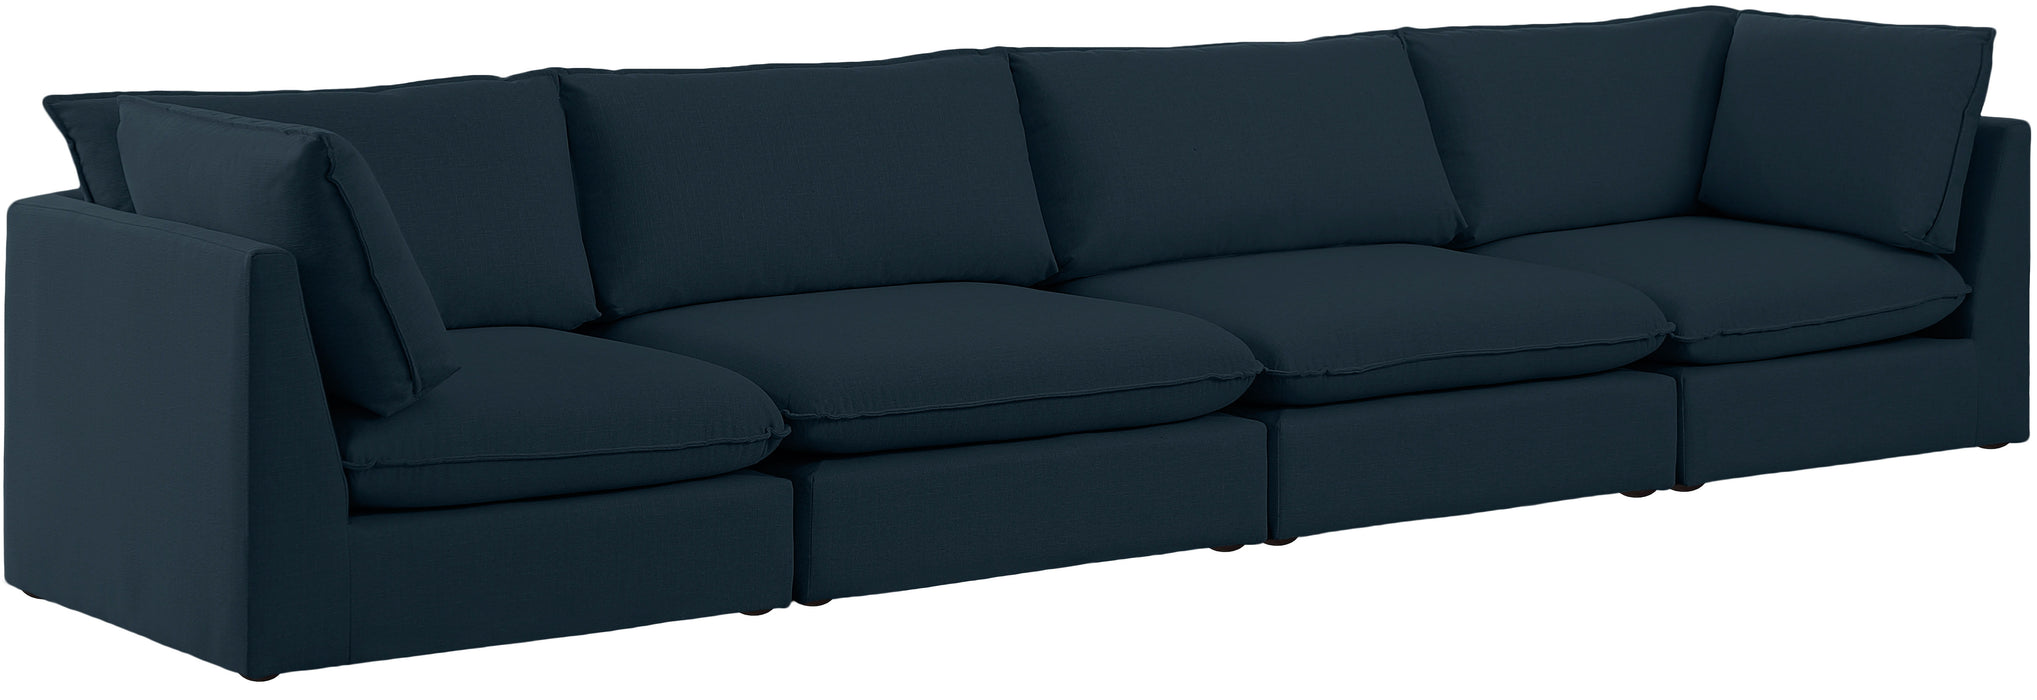 Mackenzie - Modular Sofa 4 Seats